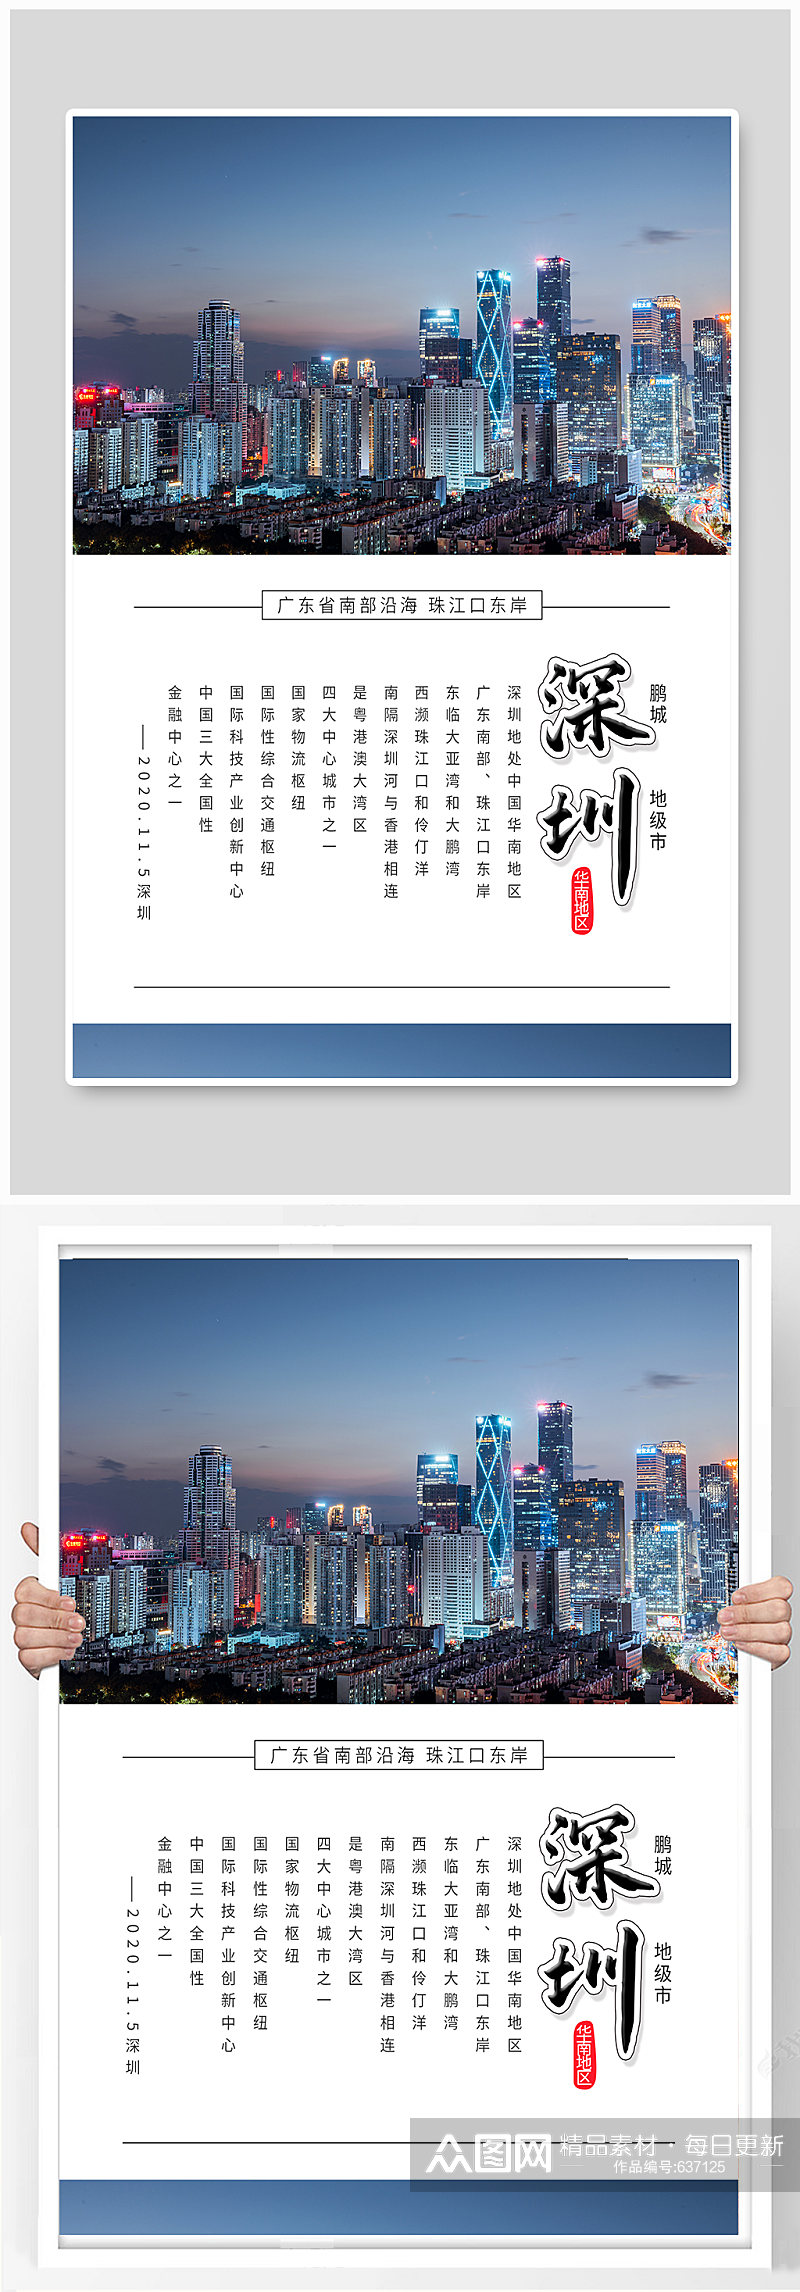 深圳城市夜景都市文化建设海报素材